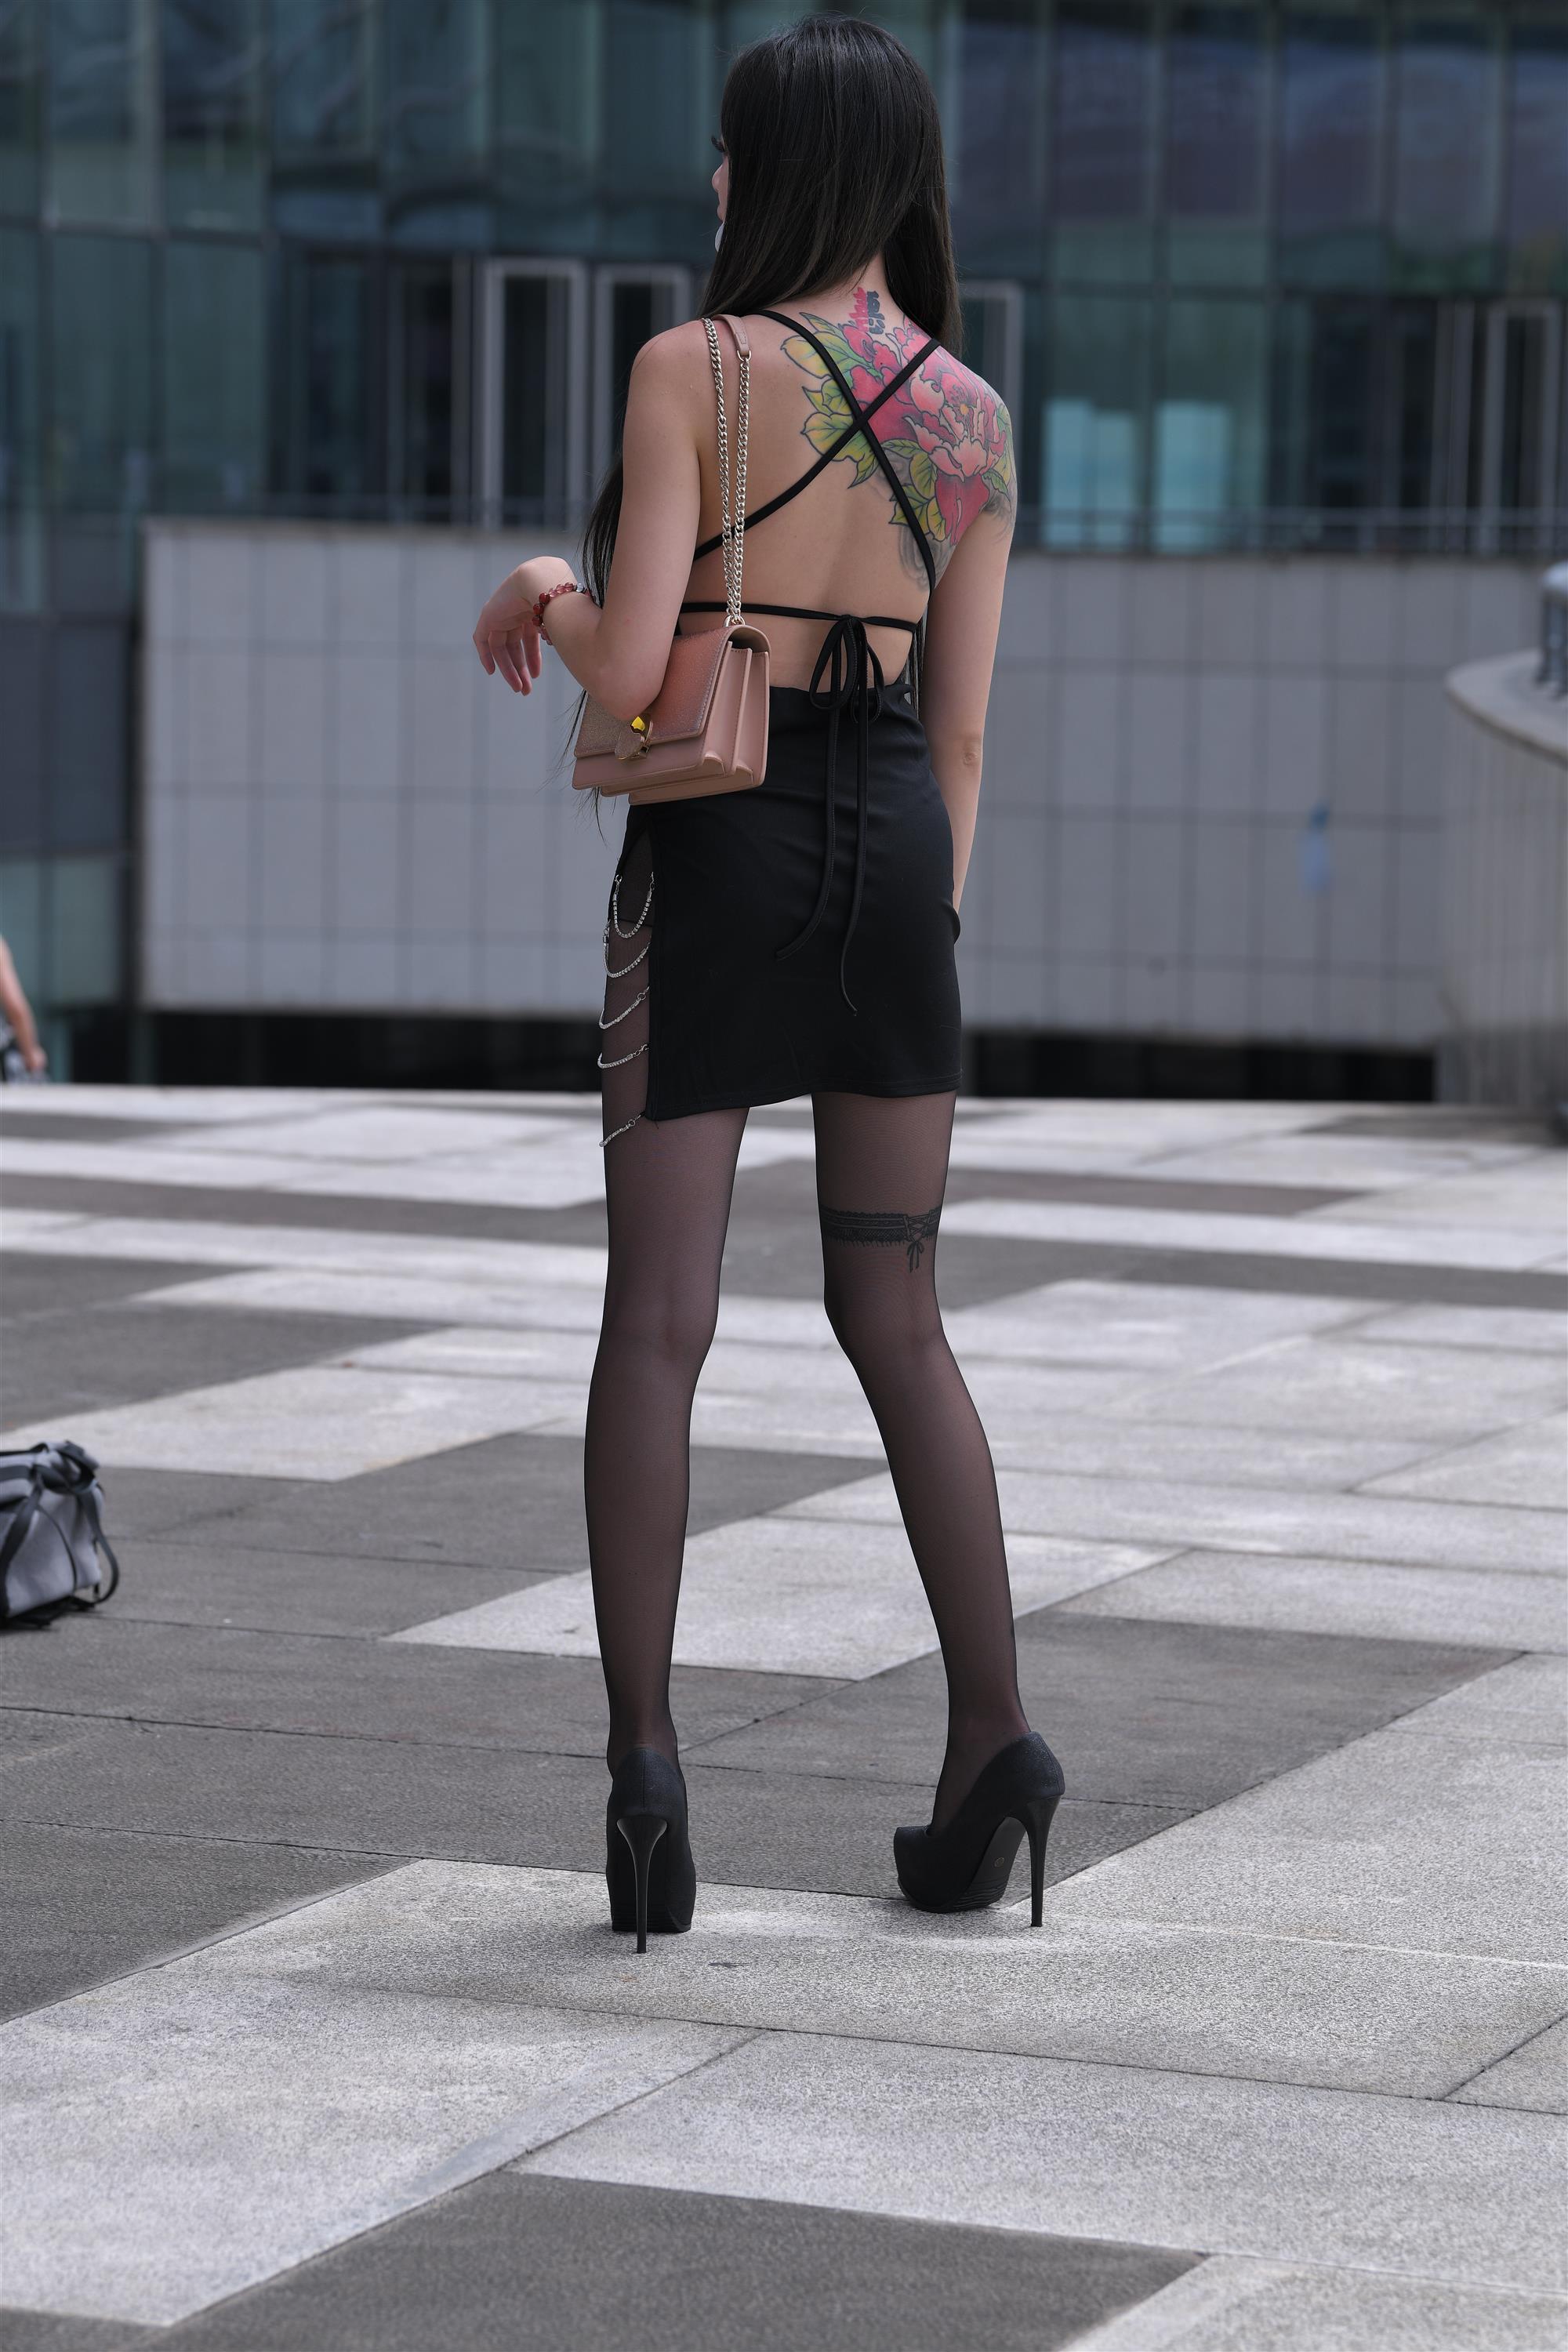 Street black stockings and high heels - 28.jpg